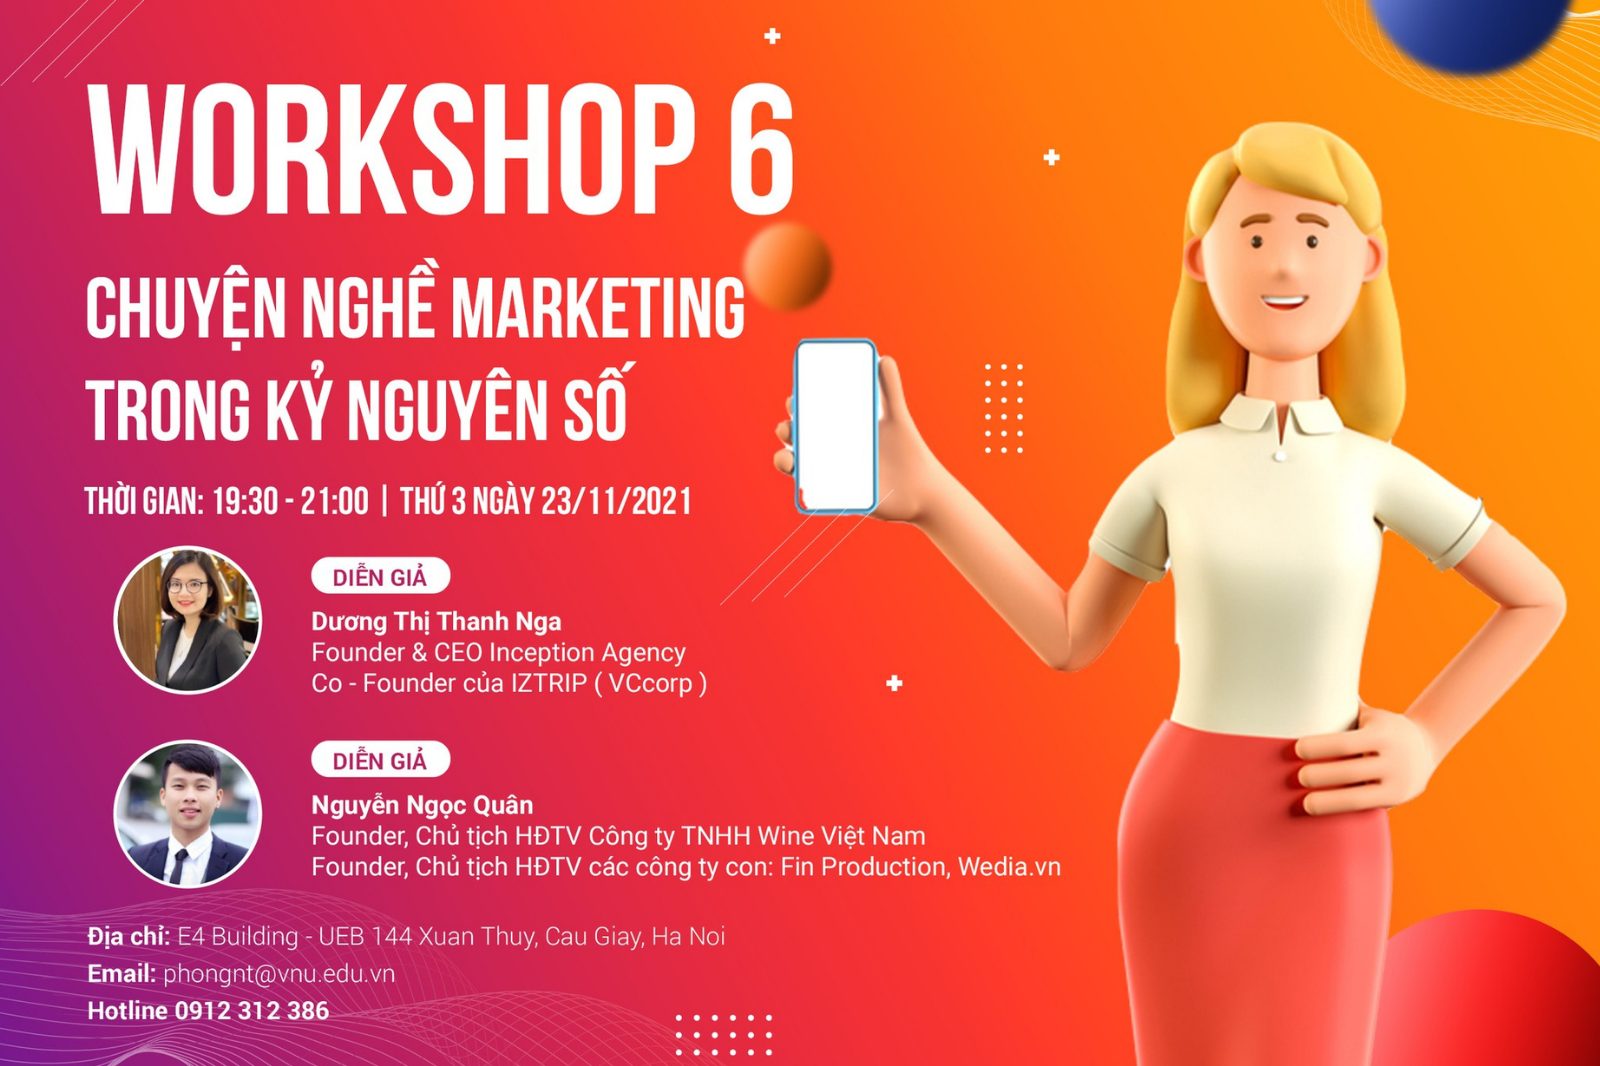 23/11 Workshop 6: Chuyện nghề Marketing trong kỷ nguyên số